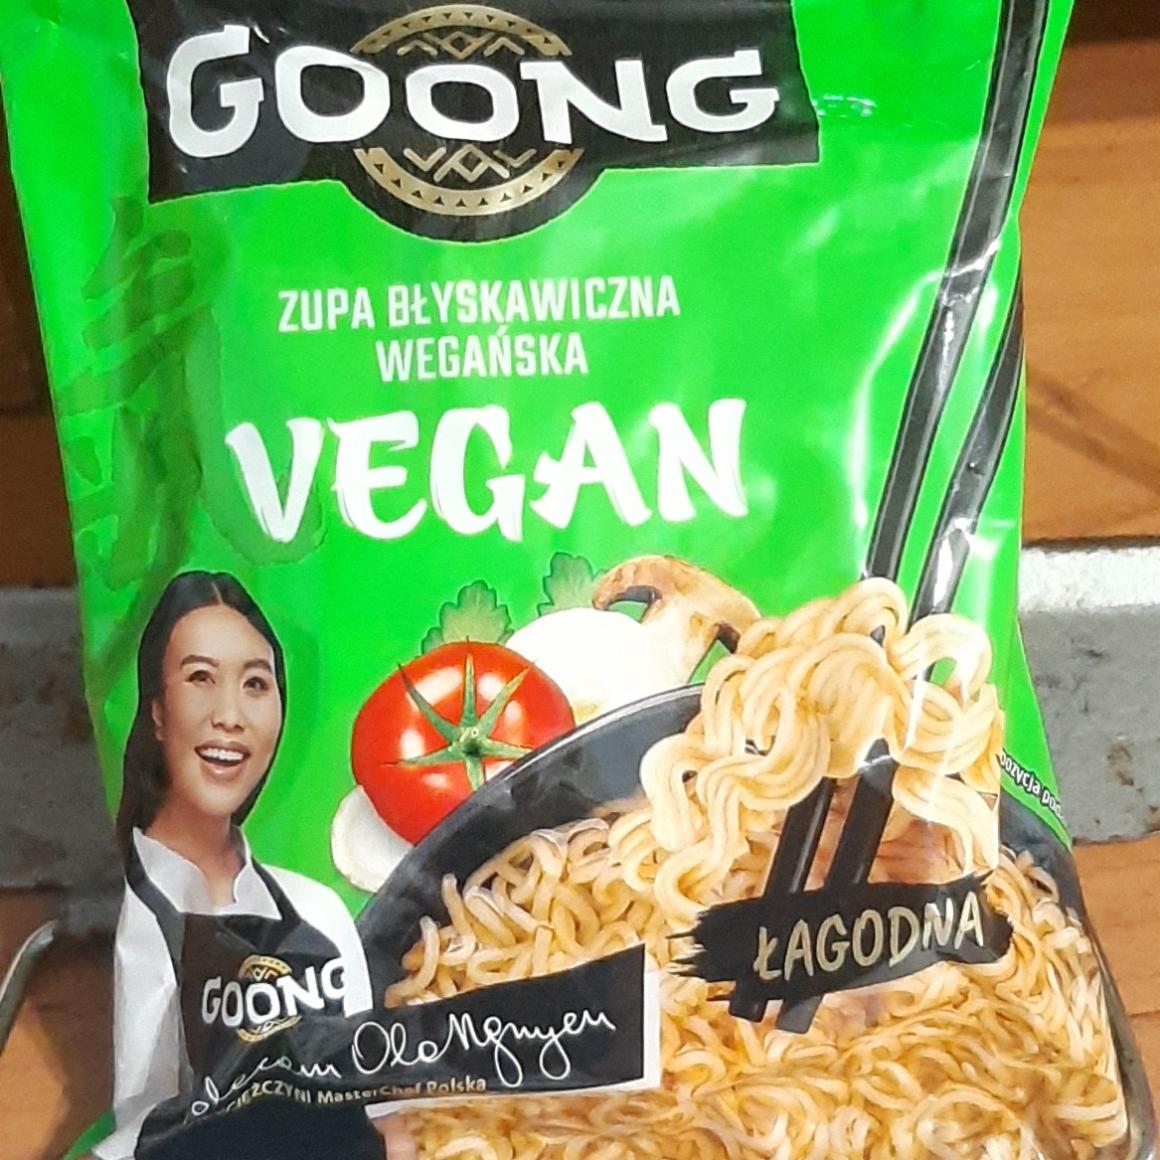 Fotografie - Zupa błyskawiczna wegańska vegan Goong